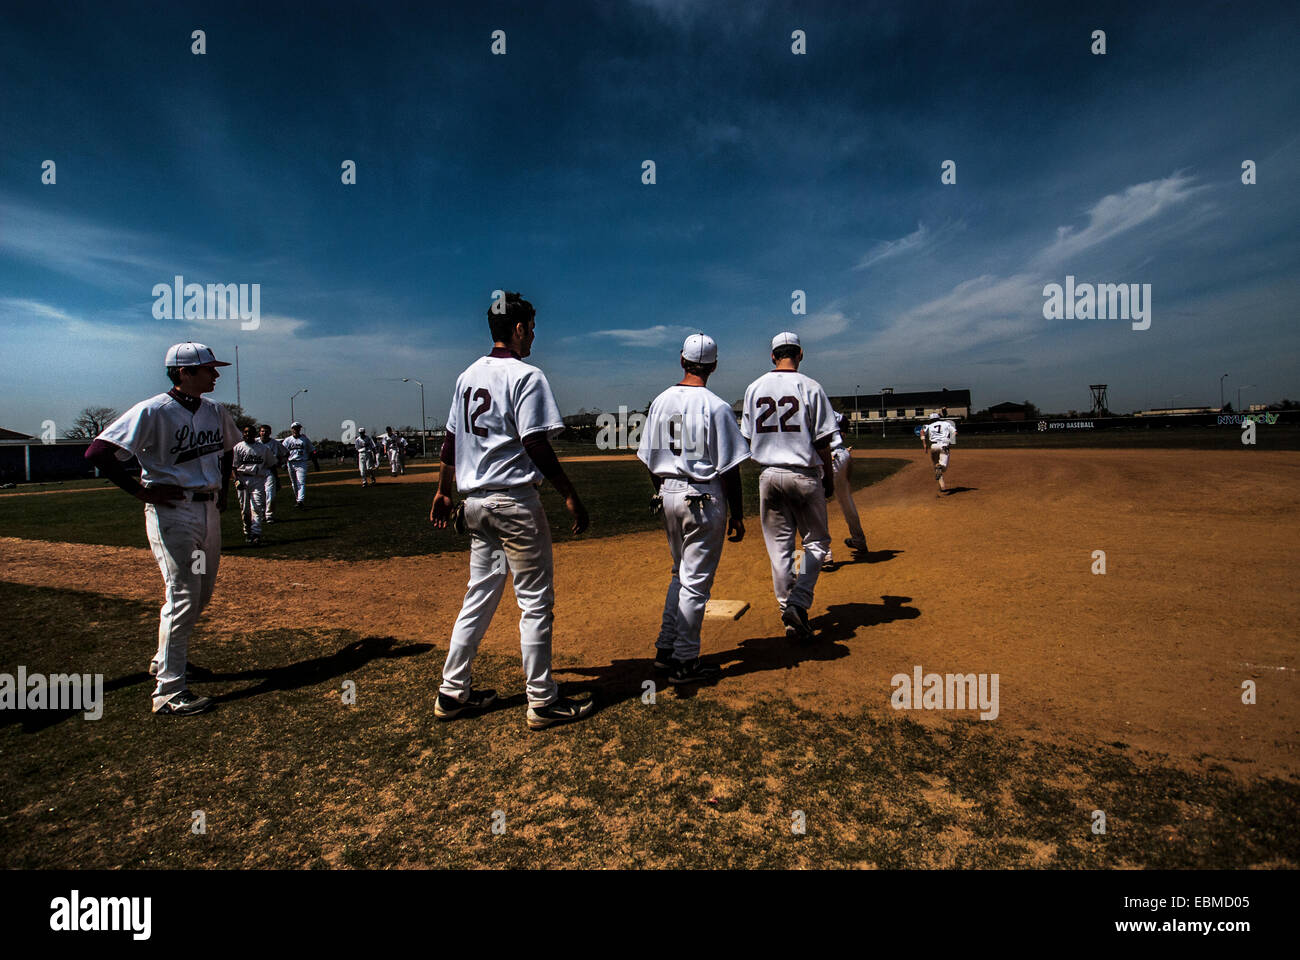 Equipo de béisbol de los muchachos caminando hacia el campo de béisbol con una sobrecarga de Big Sky Foto de stock